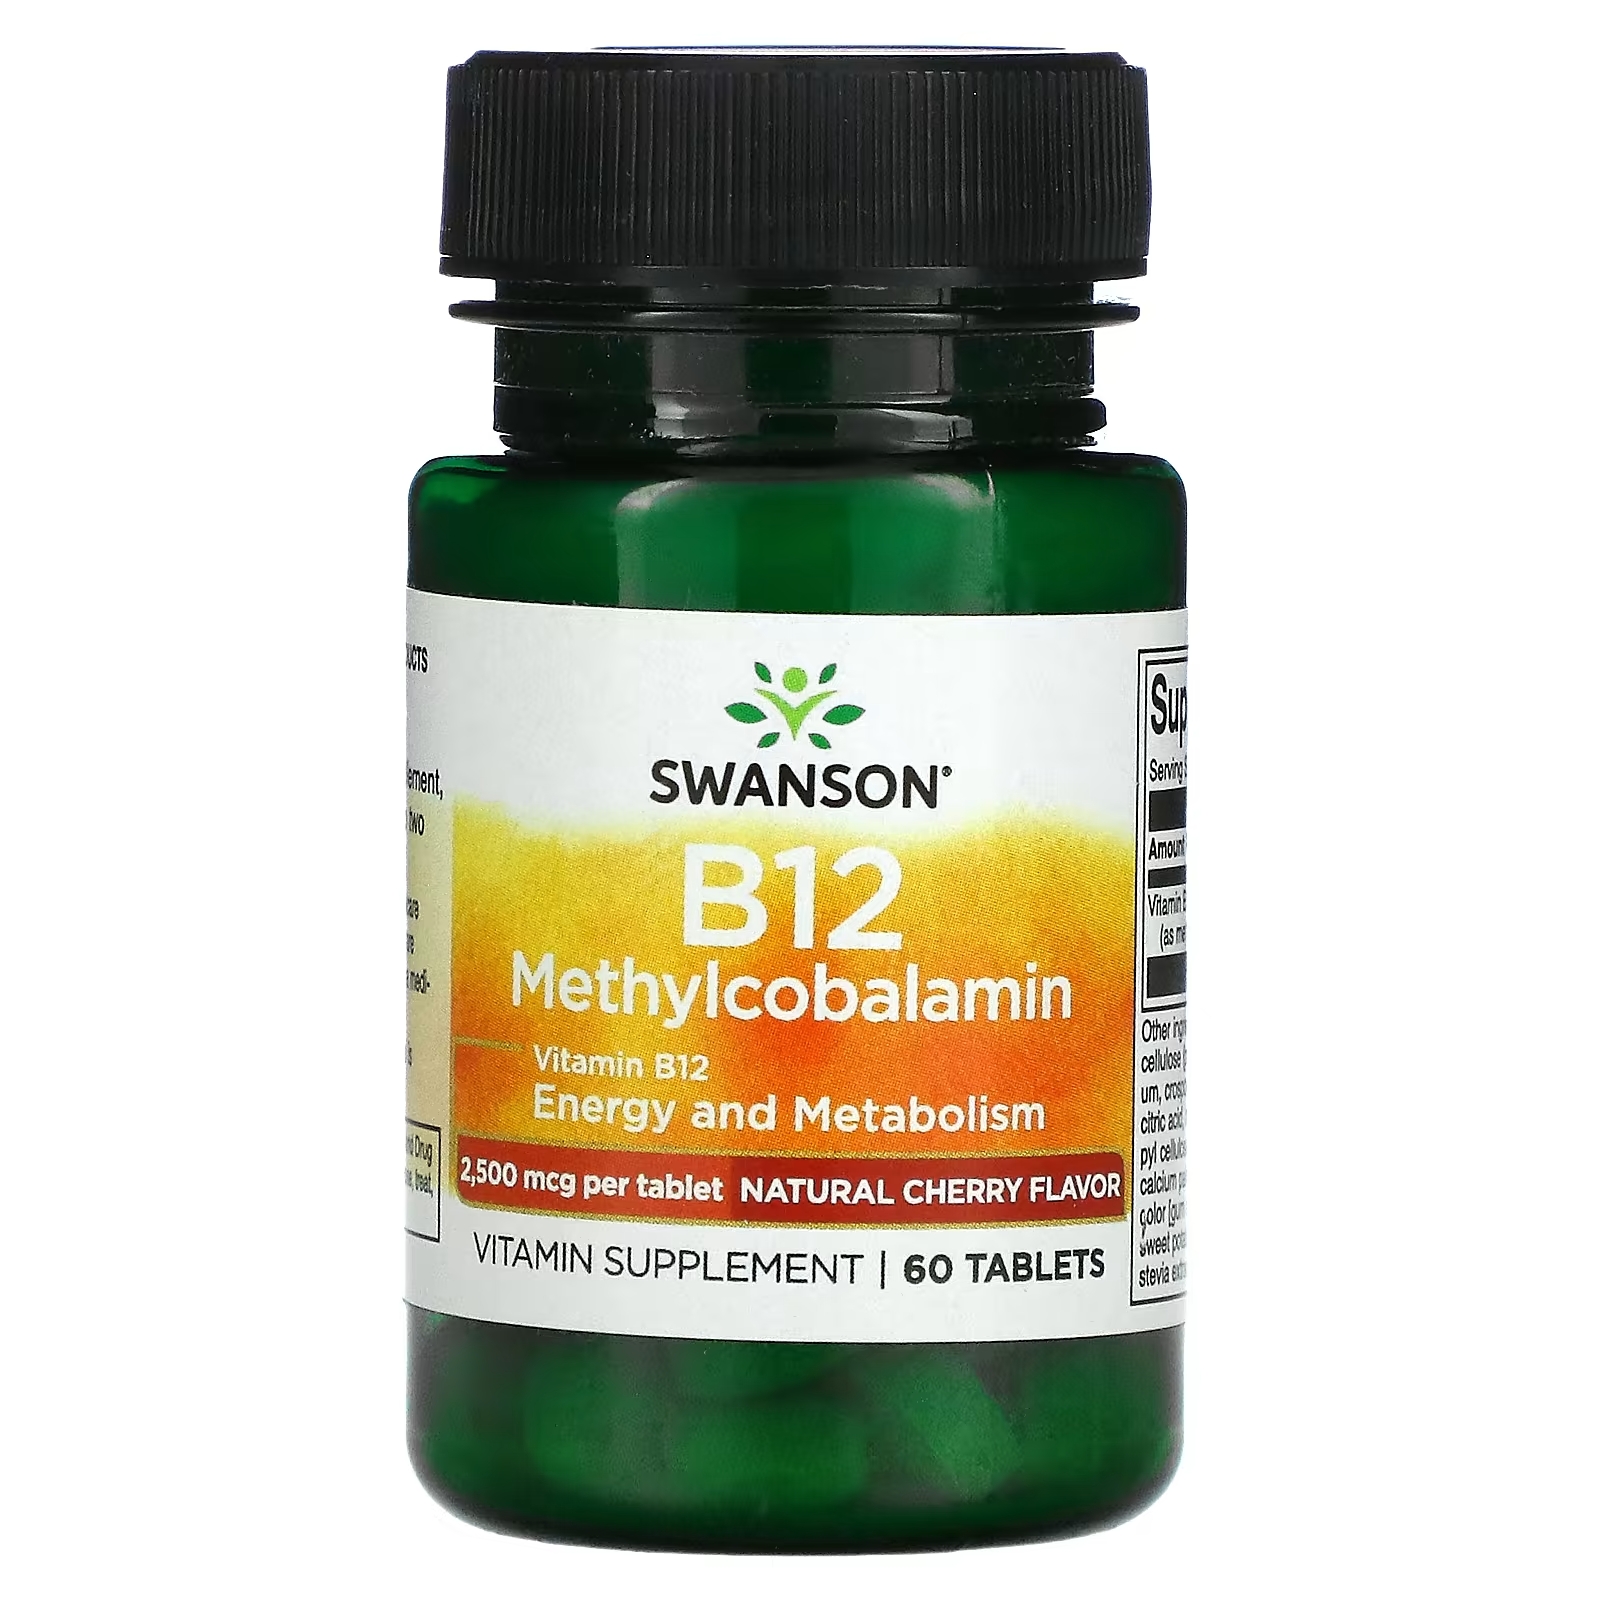 Swanson B12 метилкобаламин вишня, 60 таблеток активированный комплекс b12 swanson натуральная вишня 60 пастилок